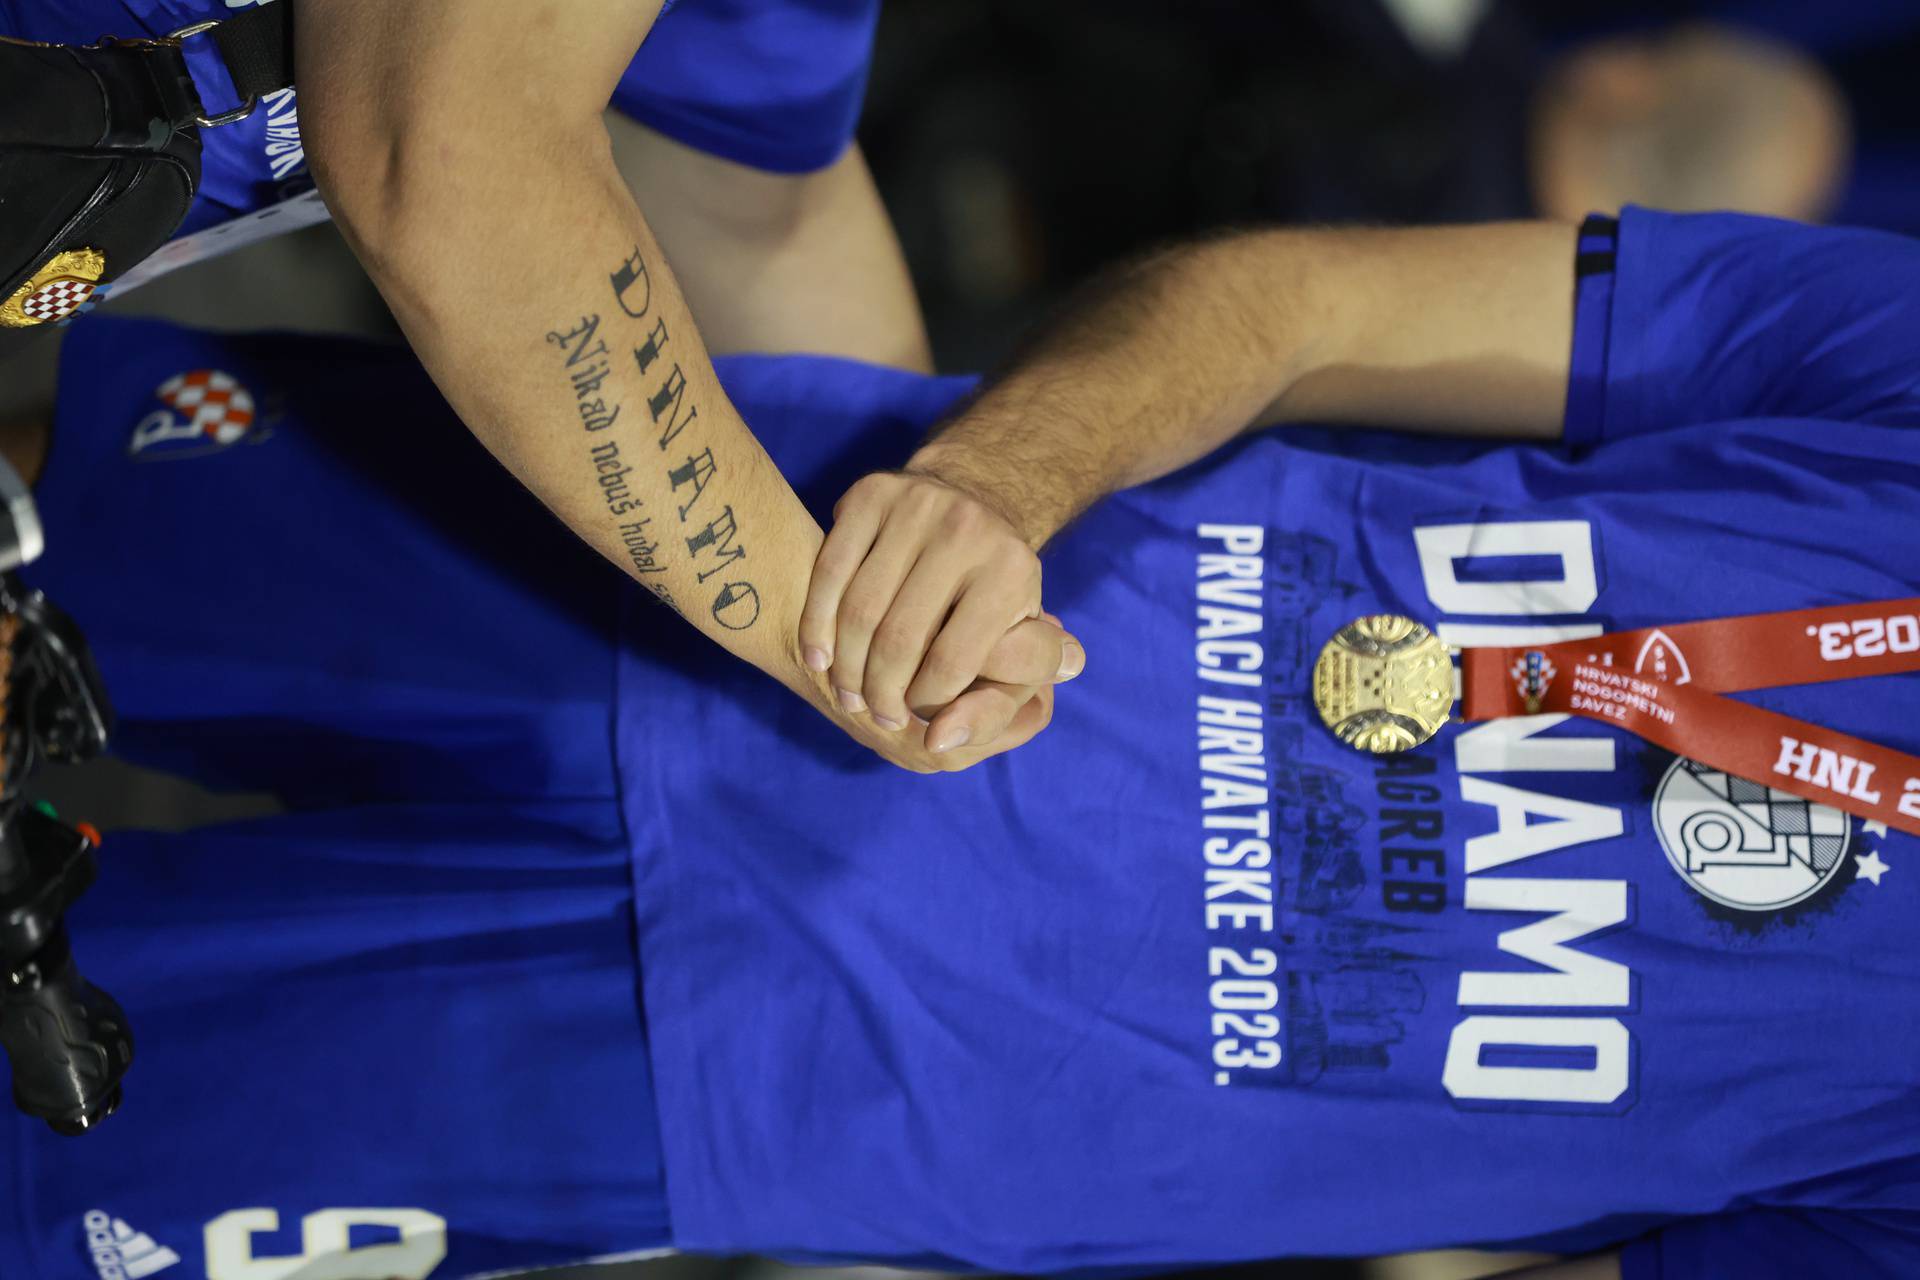 Zagreb: Igra?i Dinama nakon utakmice naslov prvaka proslavili s obitelji